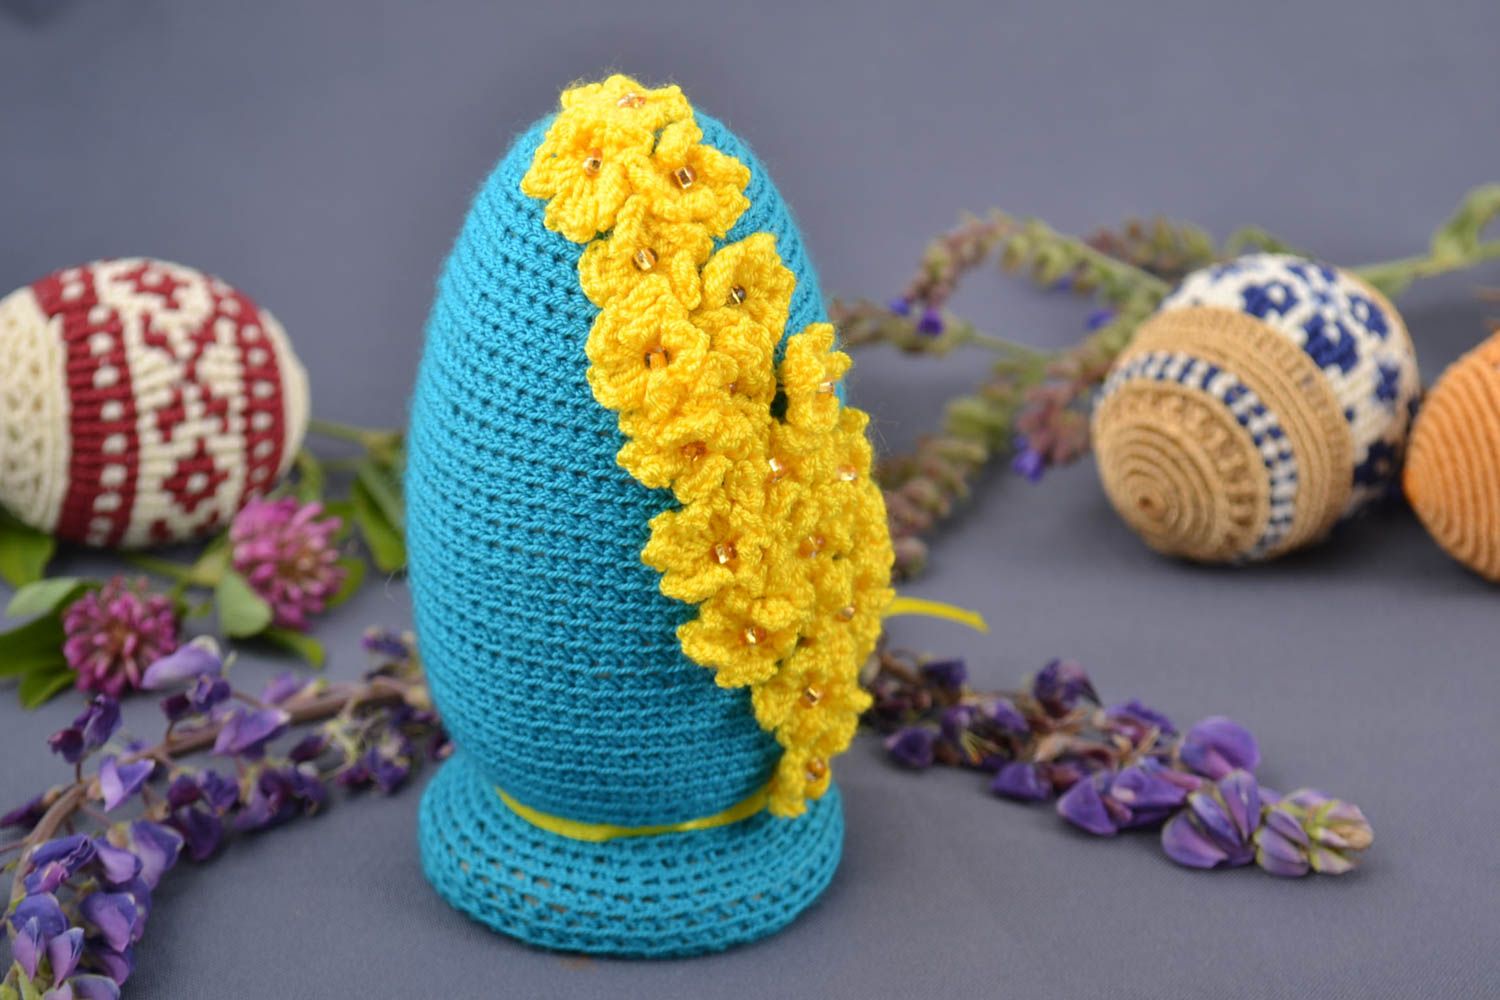 Пасхальное яйцо ручной работы в технике макраме с цветами голубое с желтым  фото 1